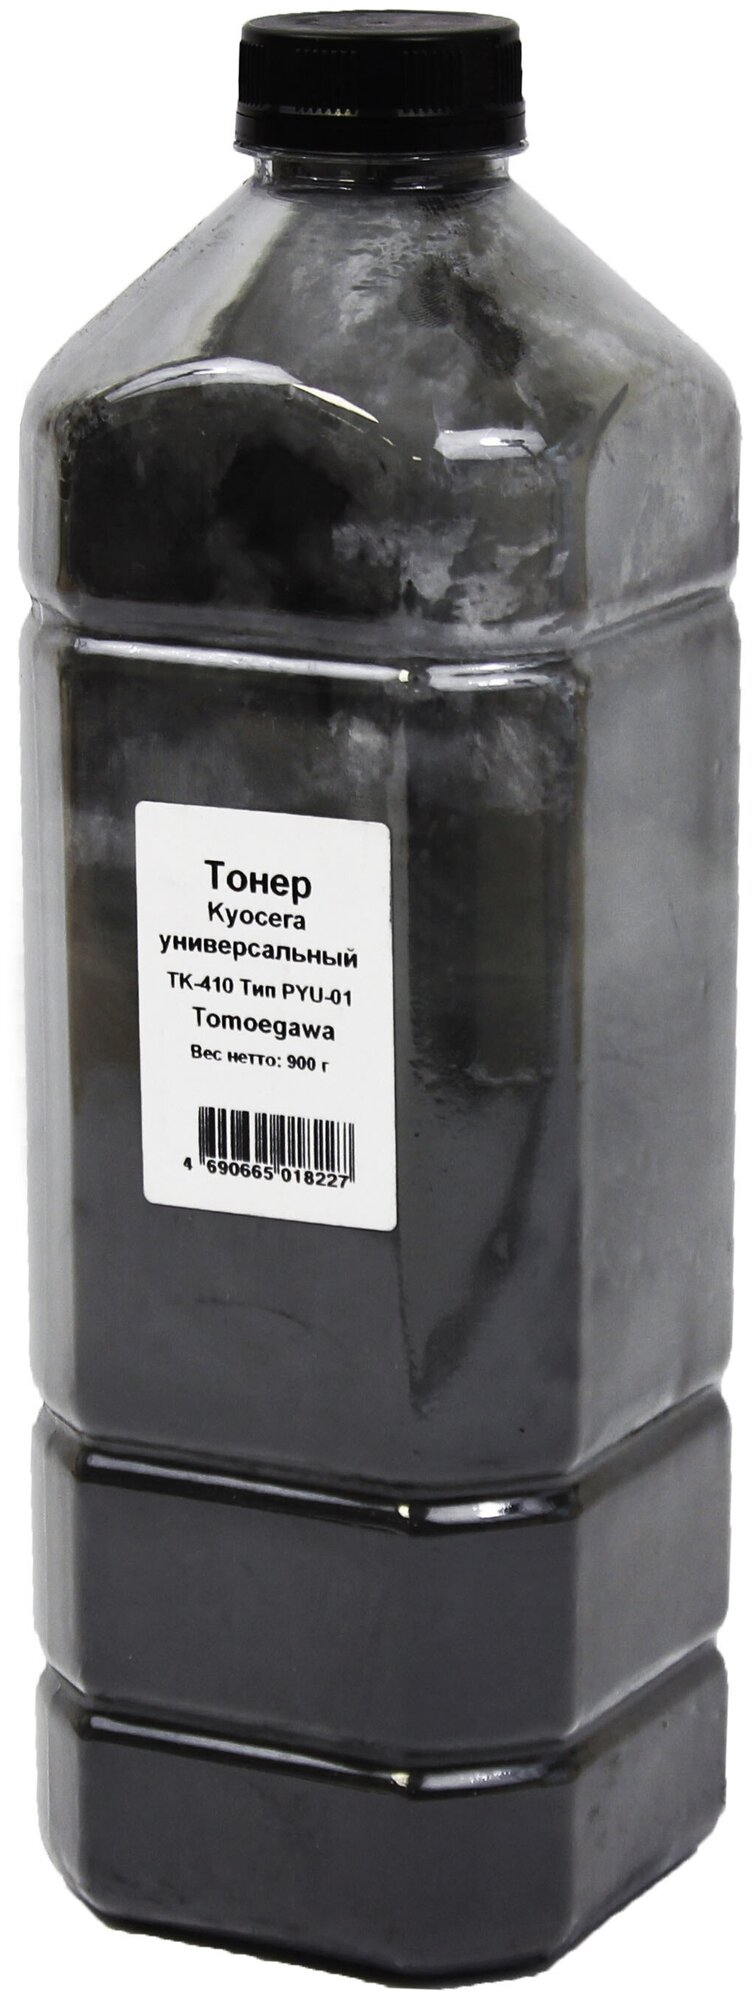 Тонер Tomoegawa PYU-01 канистра 900 г, черный